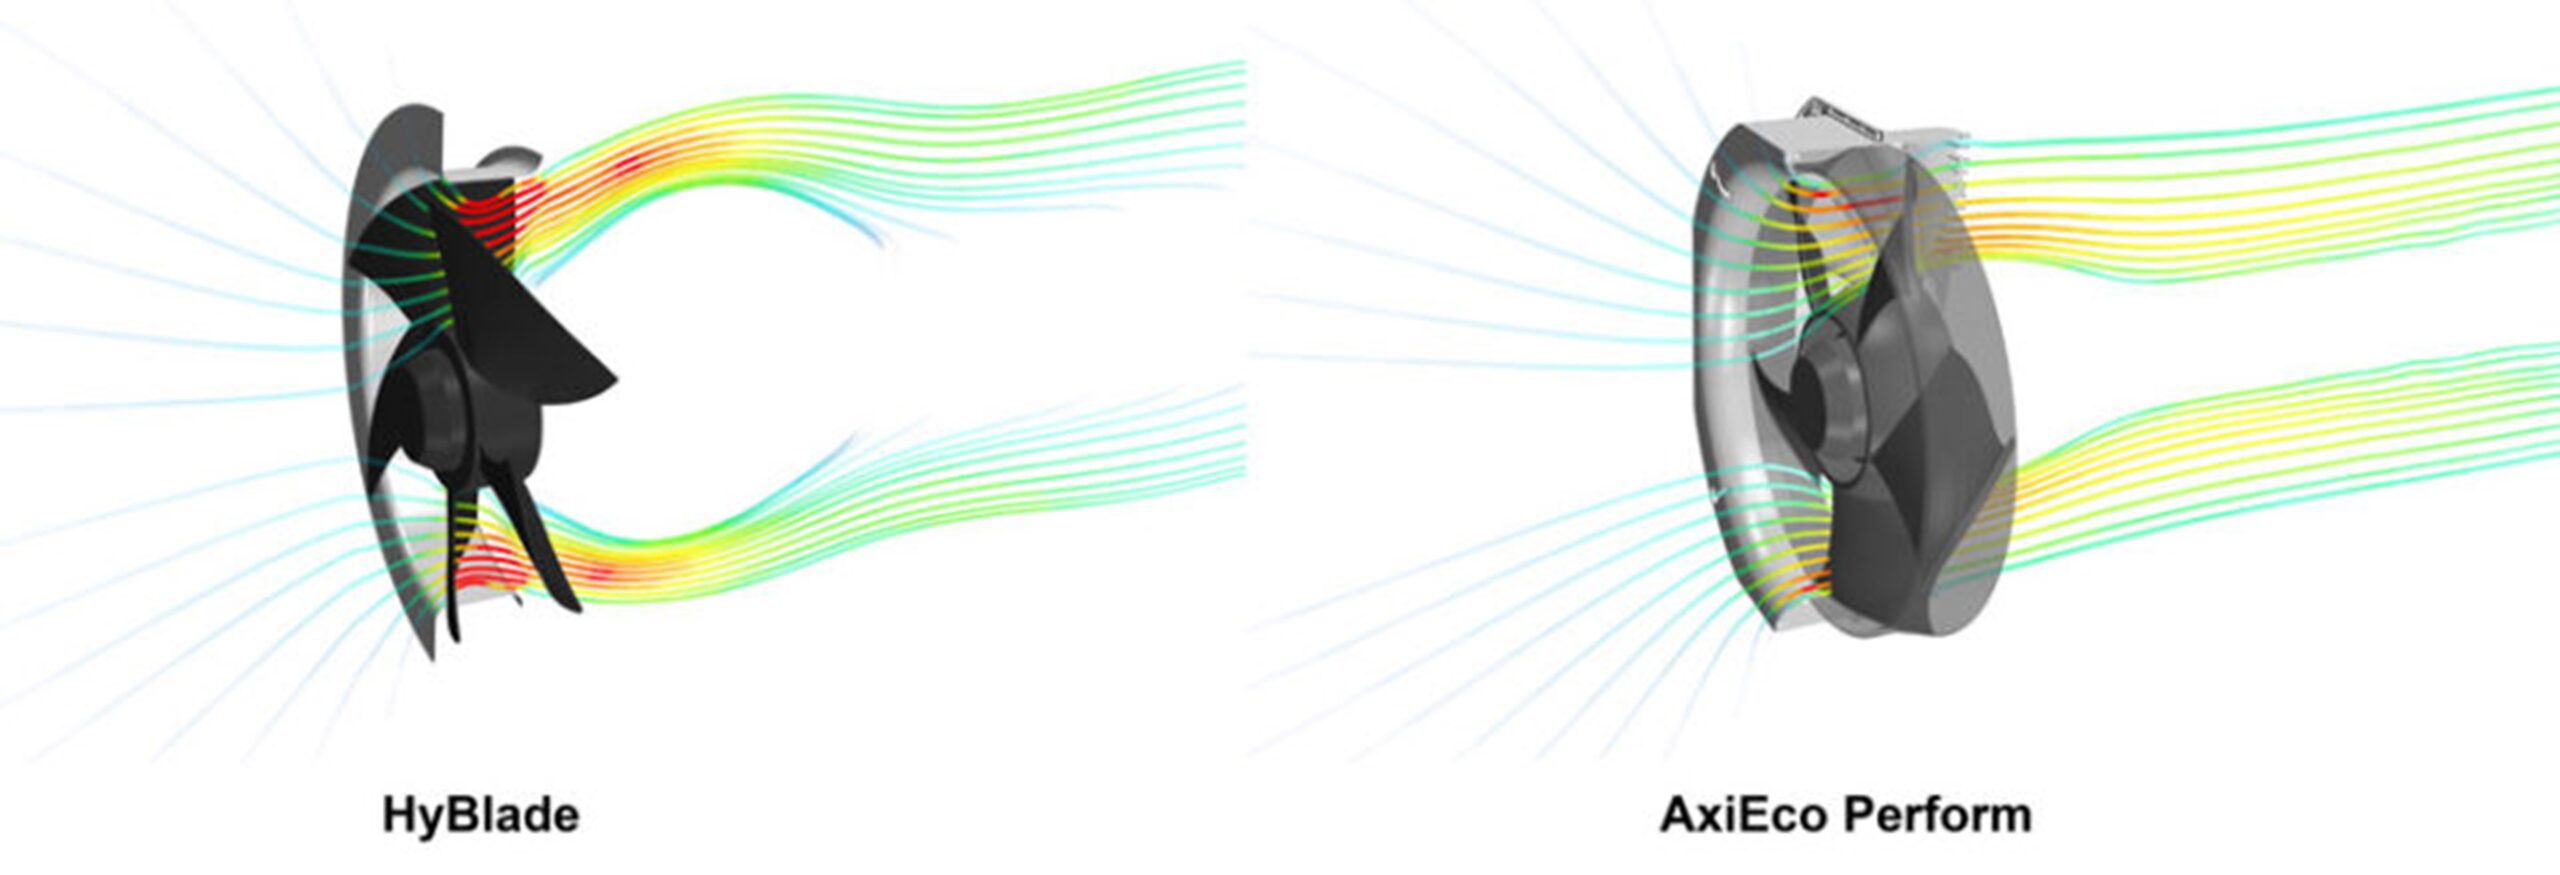 حلقه ورودی تعبیه شده در پروانه و دهانه خروجی بزرگ و طراحی محفظه مناسب در فن AxiEco Perform